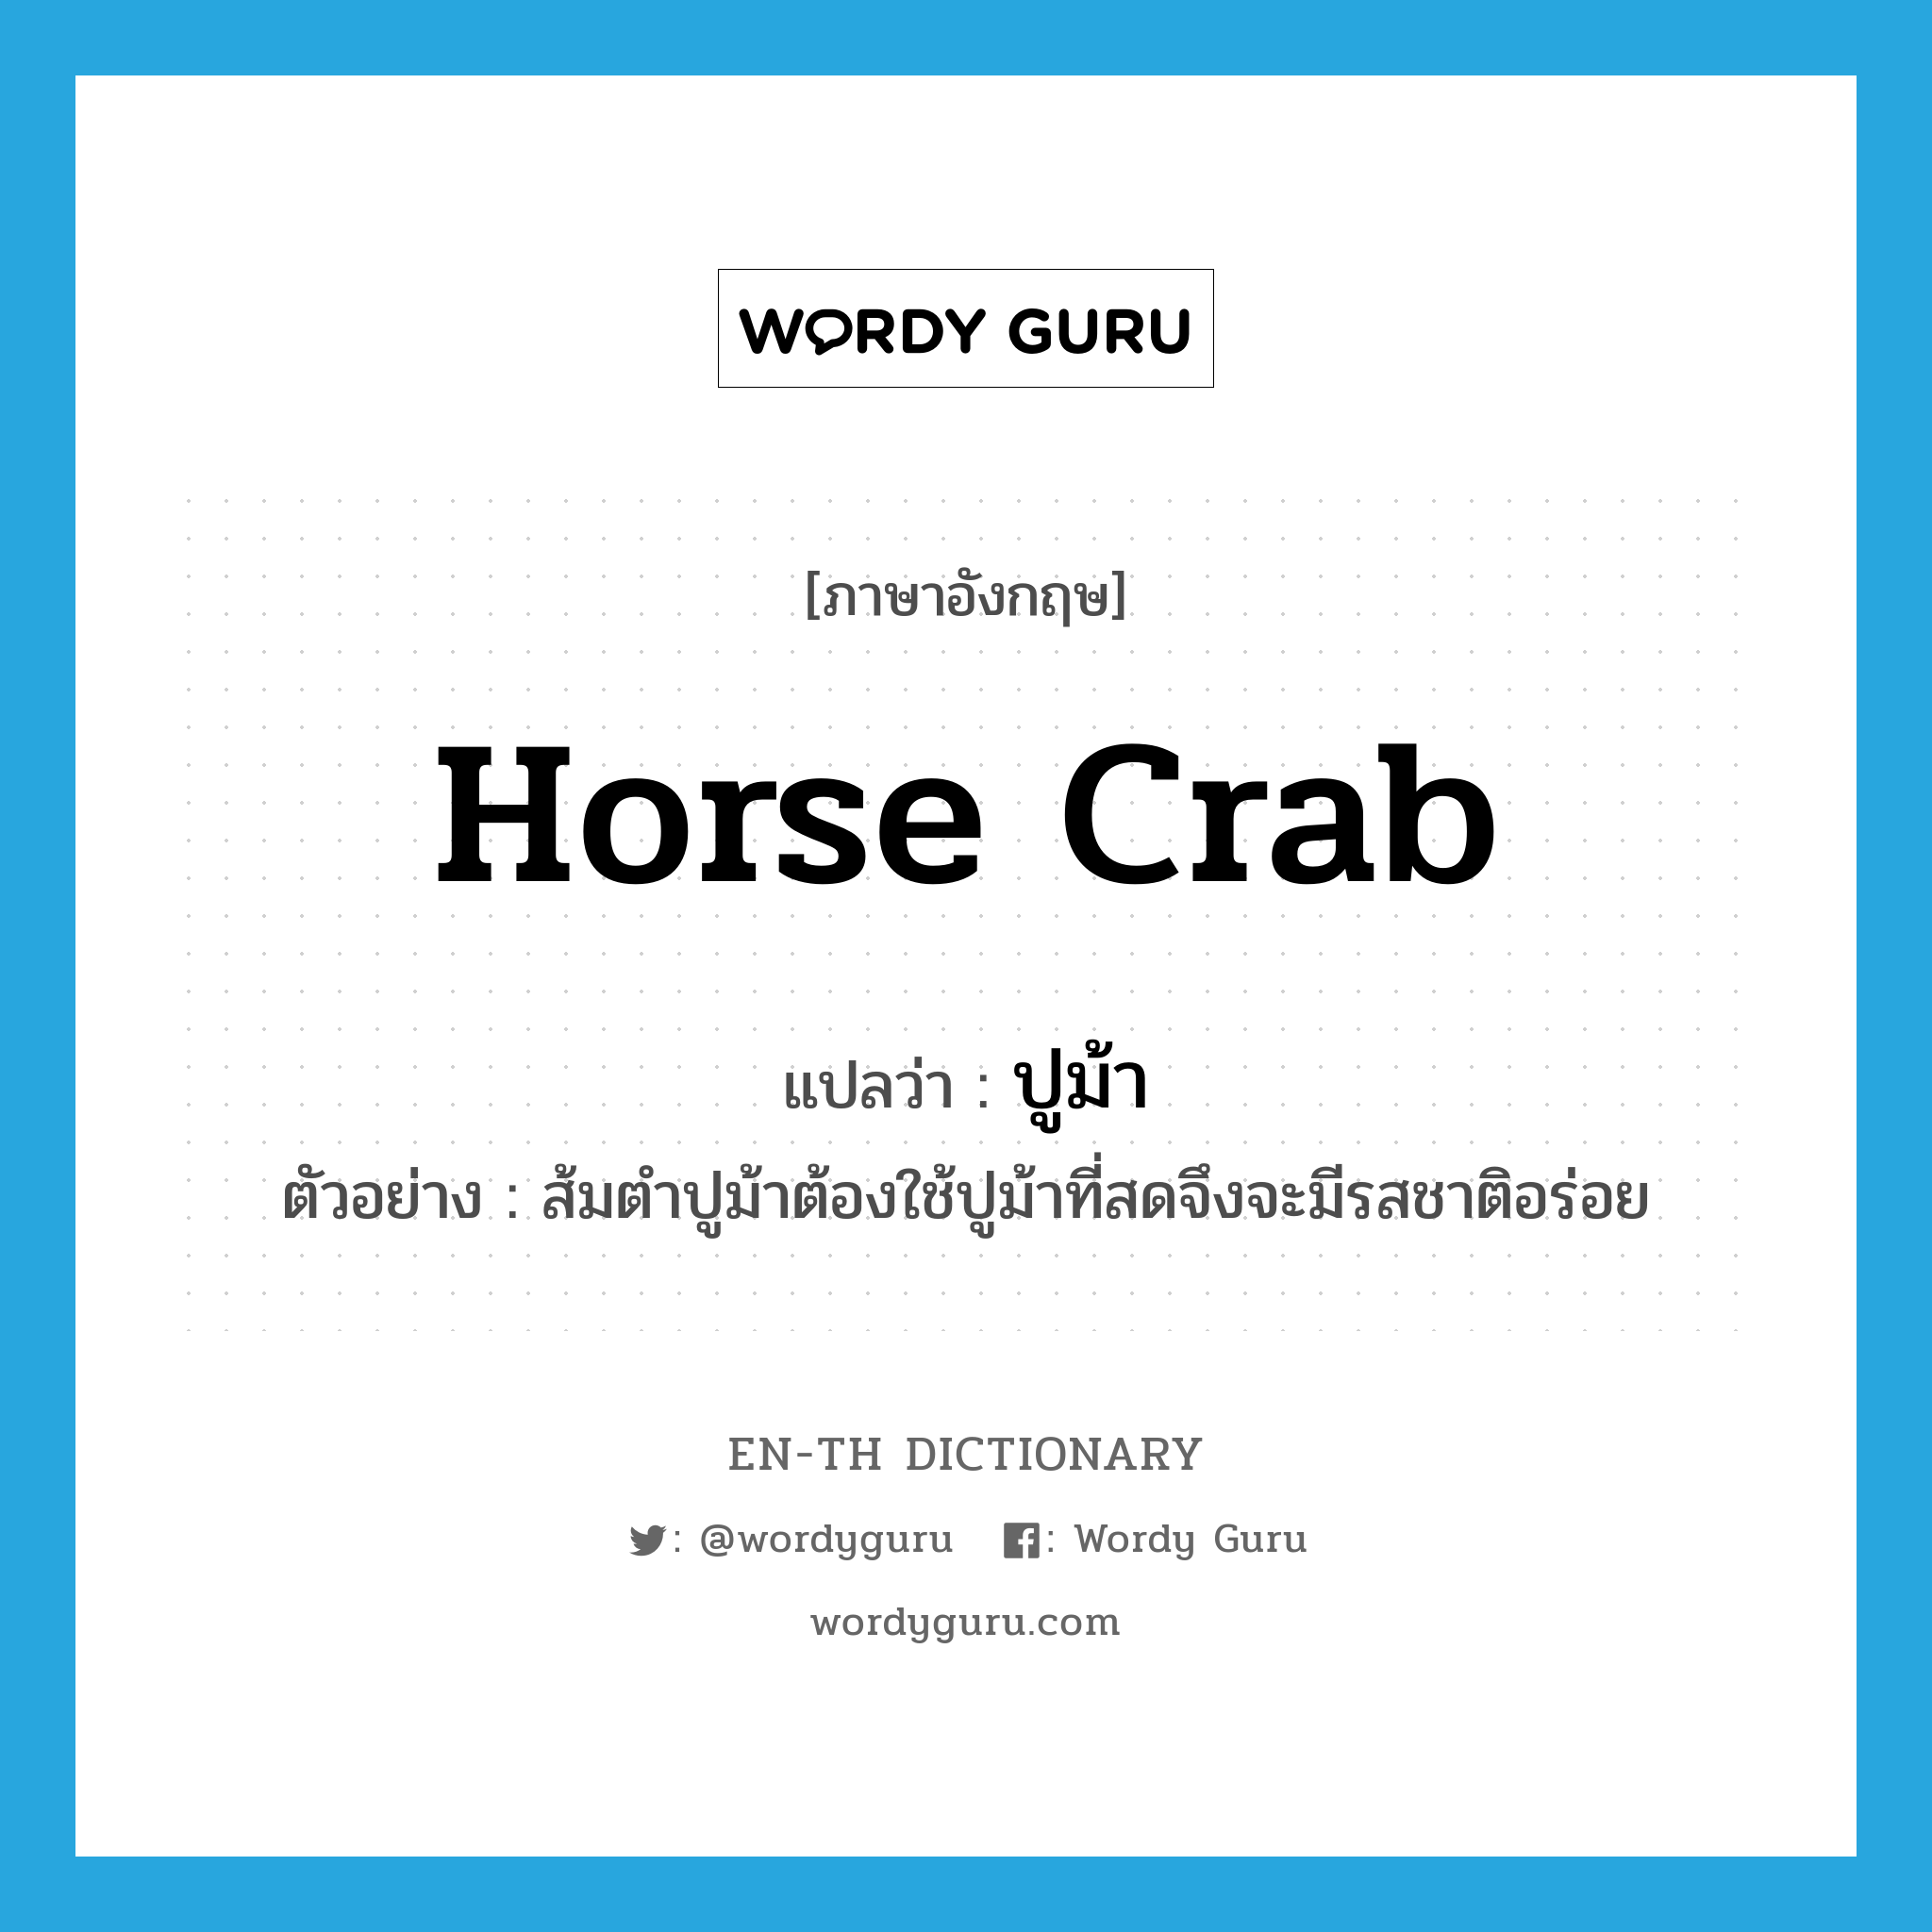 horse crab แปลว่า?, คำศัพท์ภาษาอังกฤษ horse crab แปลว่า ปูม้า ประเภท N ตัวอย่าง ส้มตำปูม้าต้องใช้ปูม้าที่สดจึงจะมีรสชาติอร่อย หมวด N